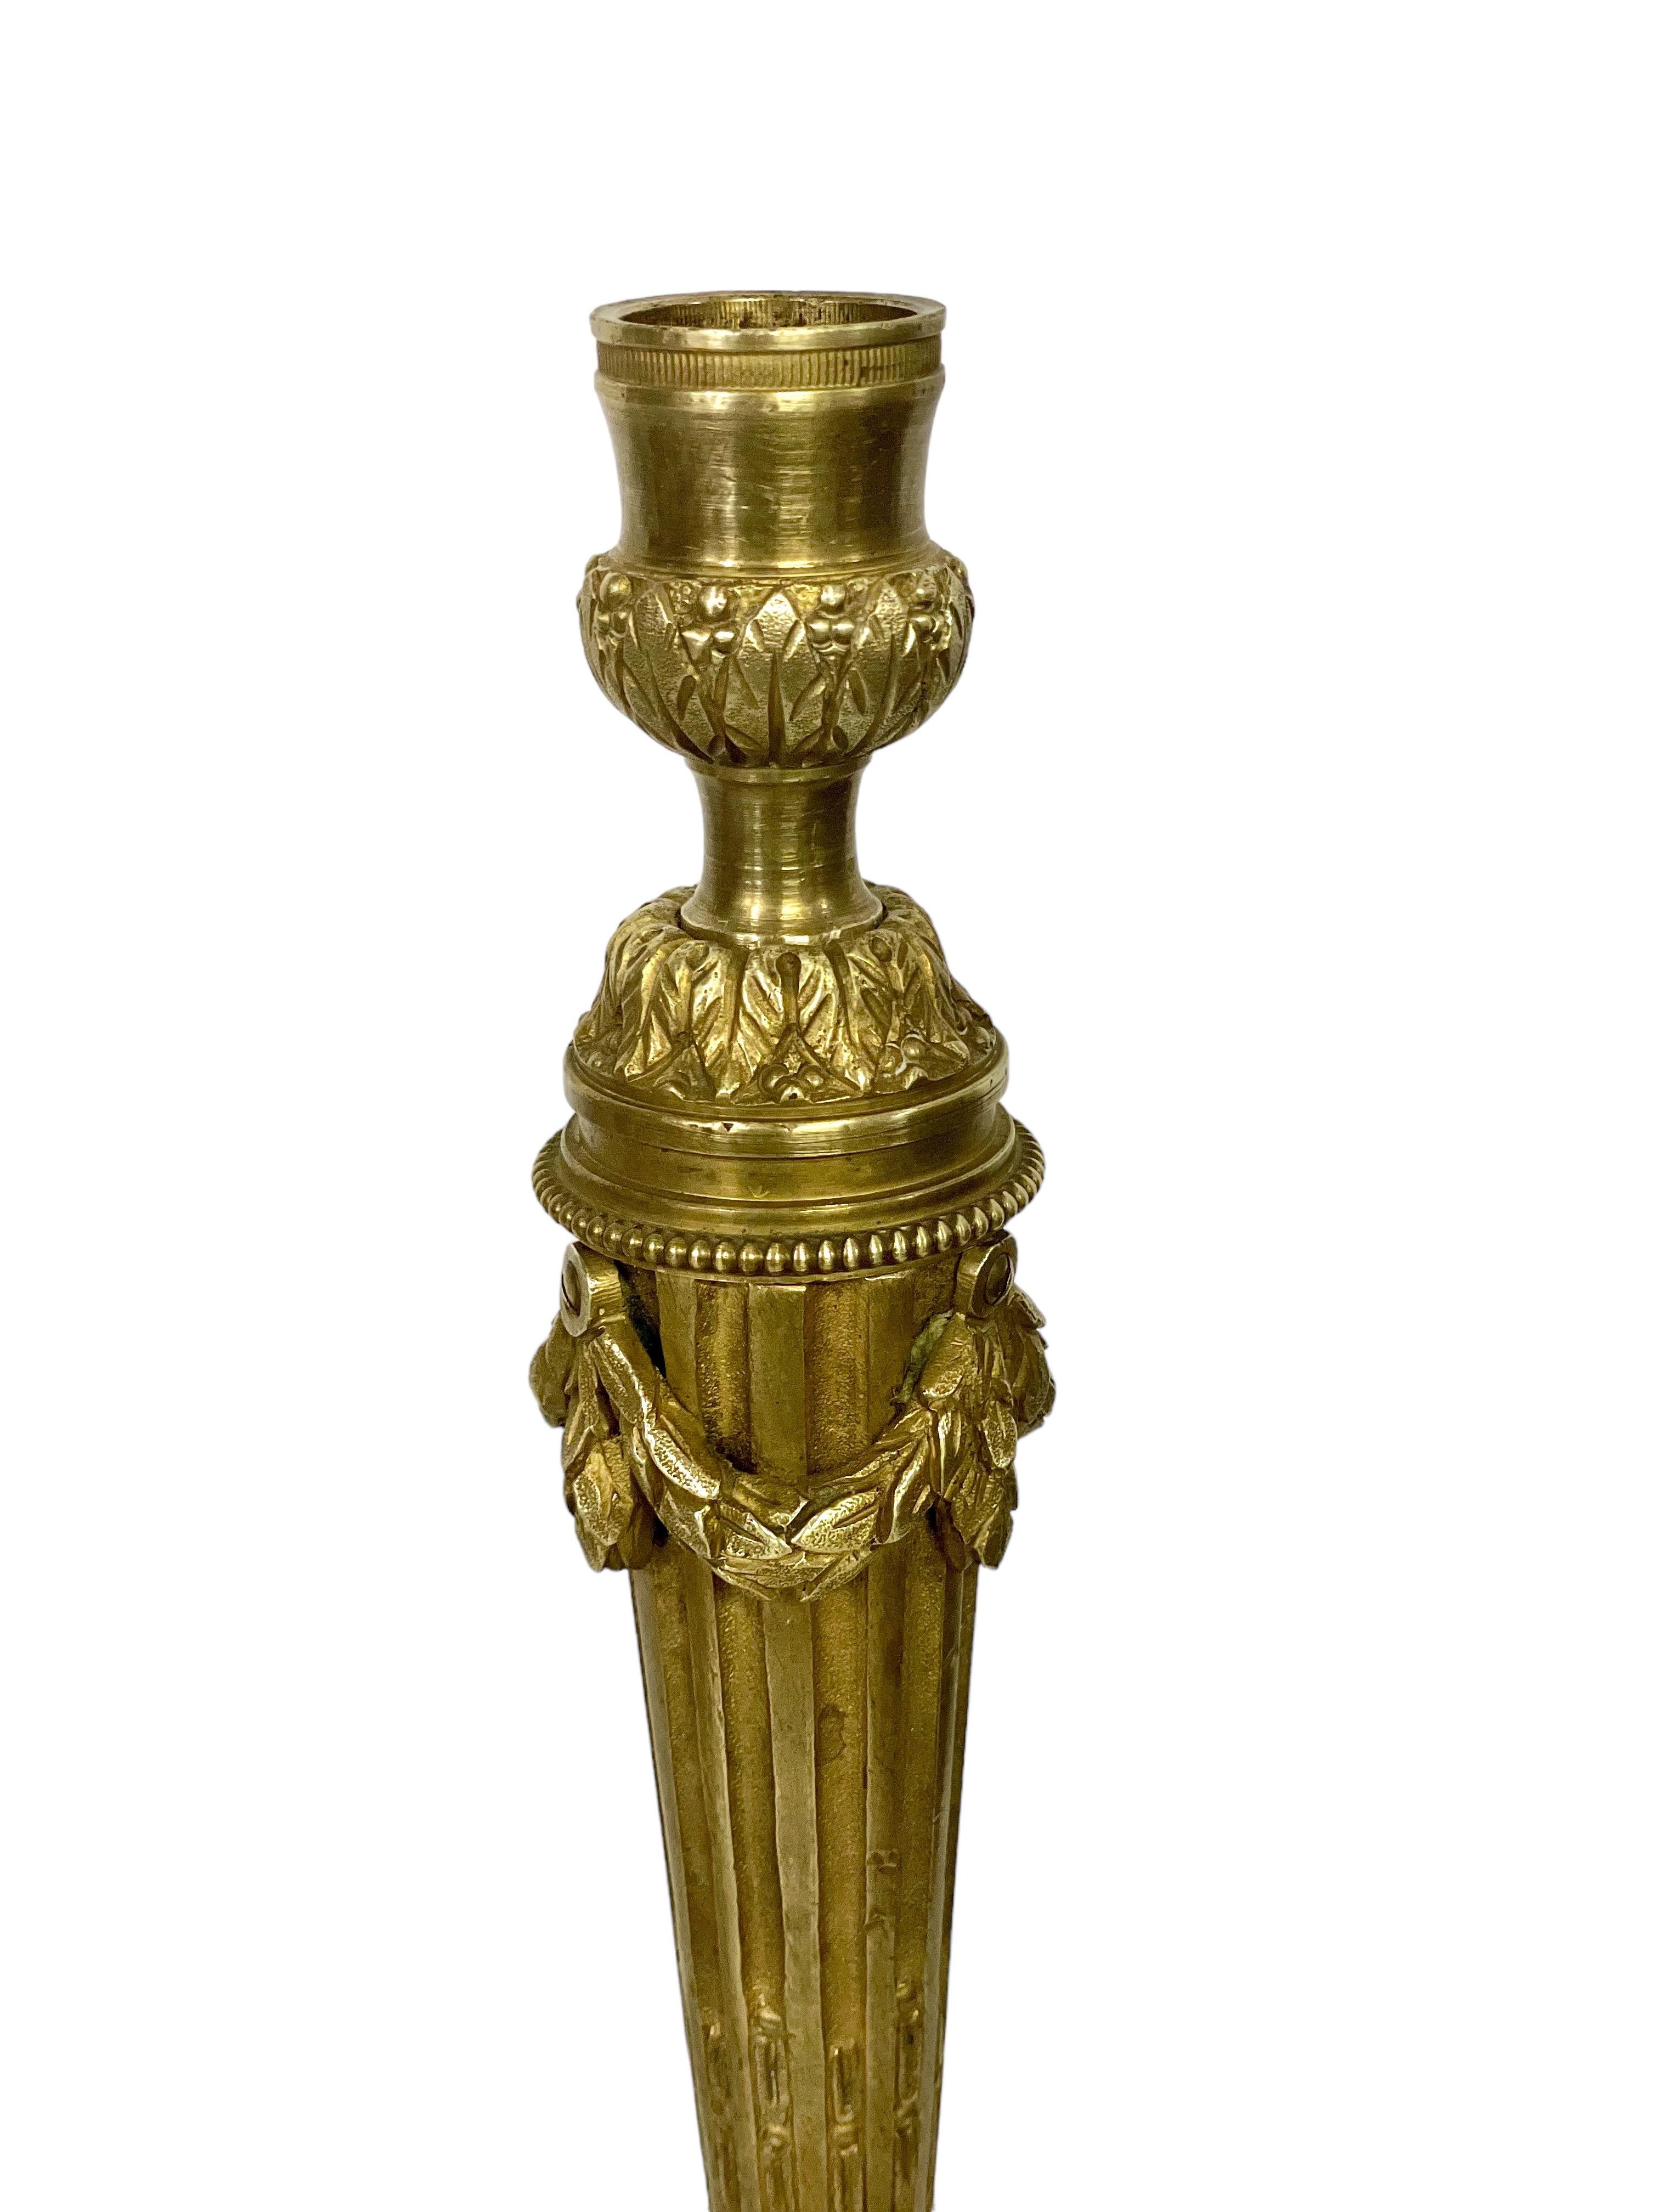 Une impressionnante paire de chandeliers de style Louis XVI en bronze ciselé et doré, datant du 19e siècle. Reposant sur de lourdes bases circulaires entourées de motifs de perles et de feuillages stylisés, les fûts des colonnes sont effilés et